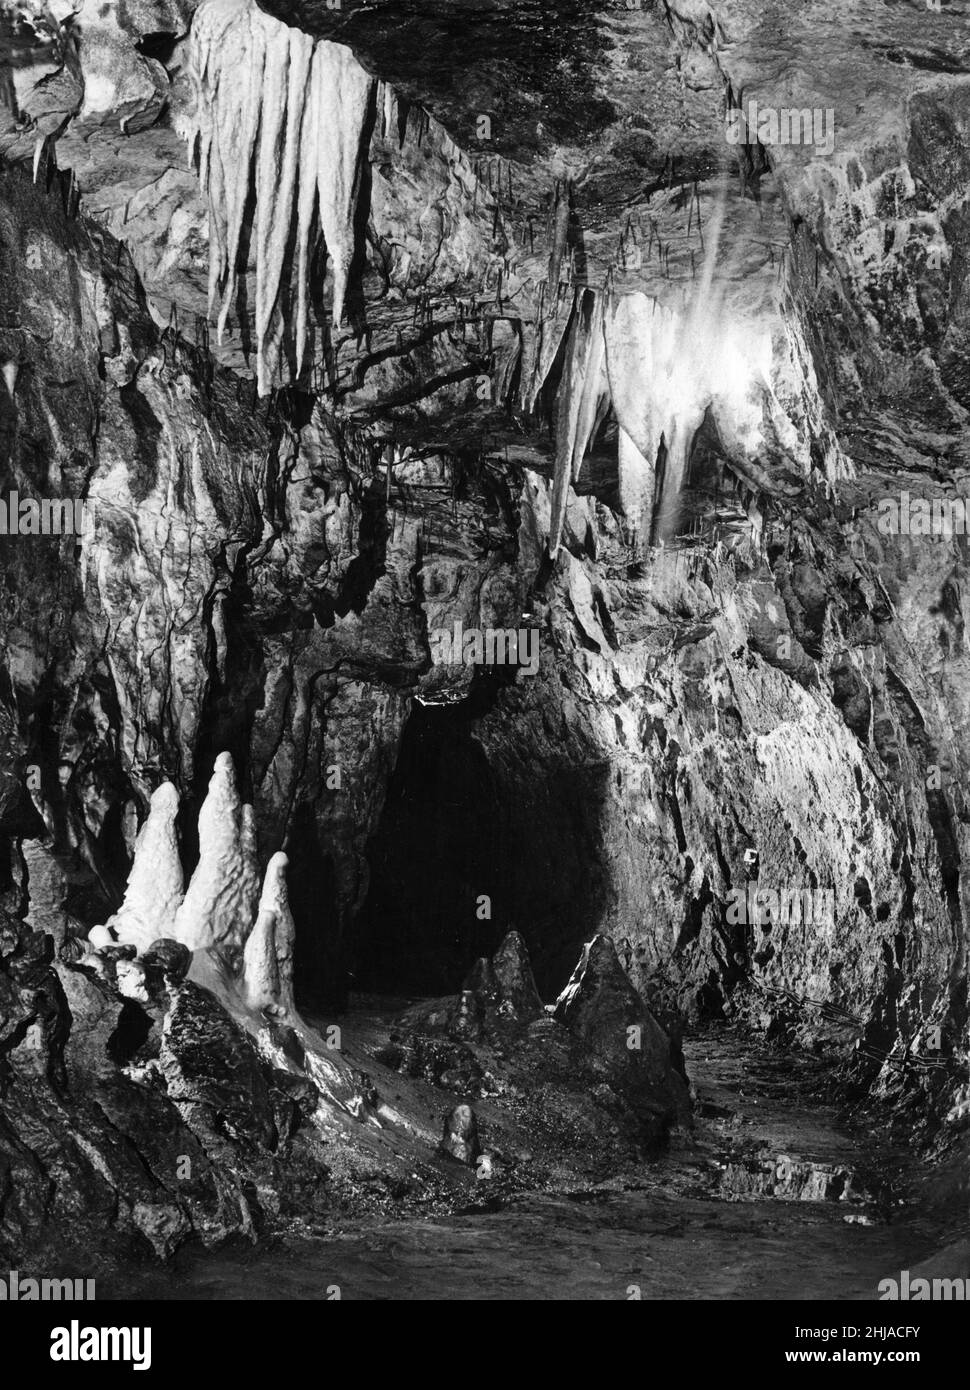 Grottes de Dan-yr-Ogod, l'attraction touristique populaire du parc national de Brecon Beacons, au pays de Galles.Il a été exploré pour la première fois en 1912.Les grottes contiennent de bons exemples de stalactites, de cavernes, de ponts naturels et de lacs souterrains et sont reconnues comme faisant partie de l'une des plus importantes zones de spéléologie de Grande-Bretagne.Photo prise le 29th mai 1964 Banque D'Images